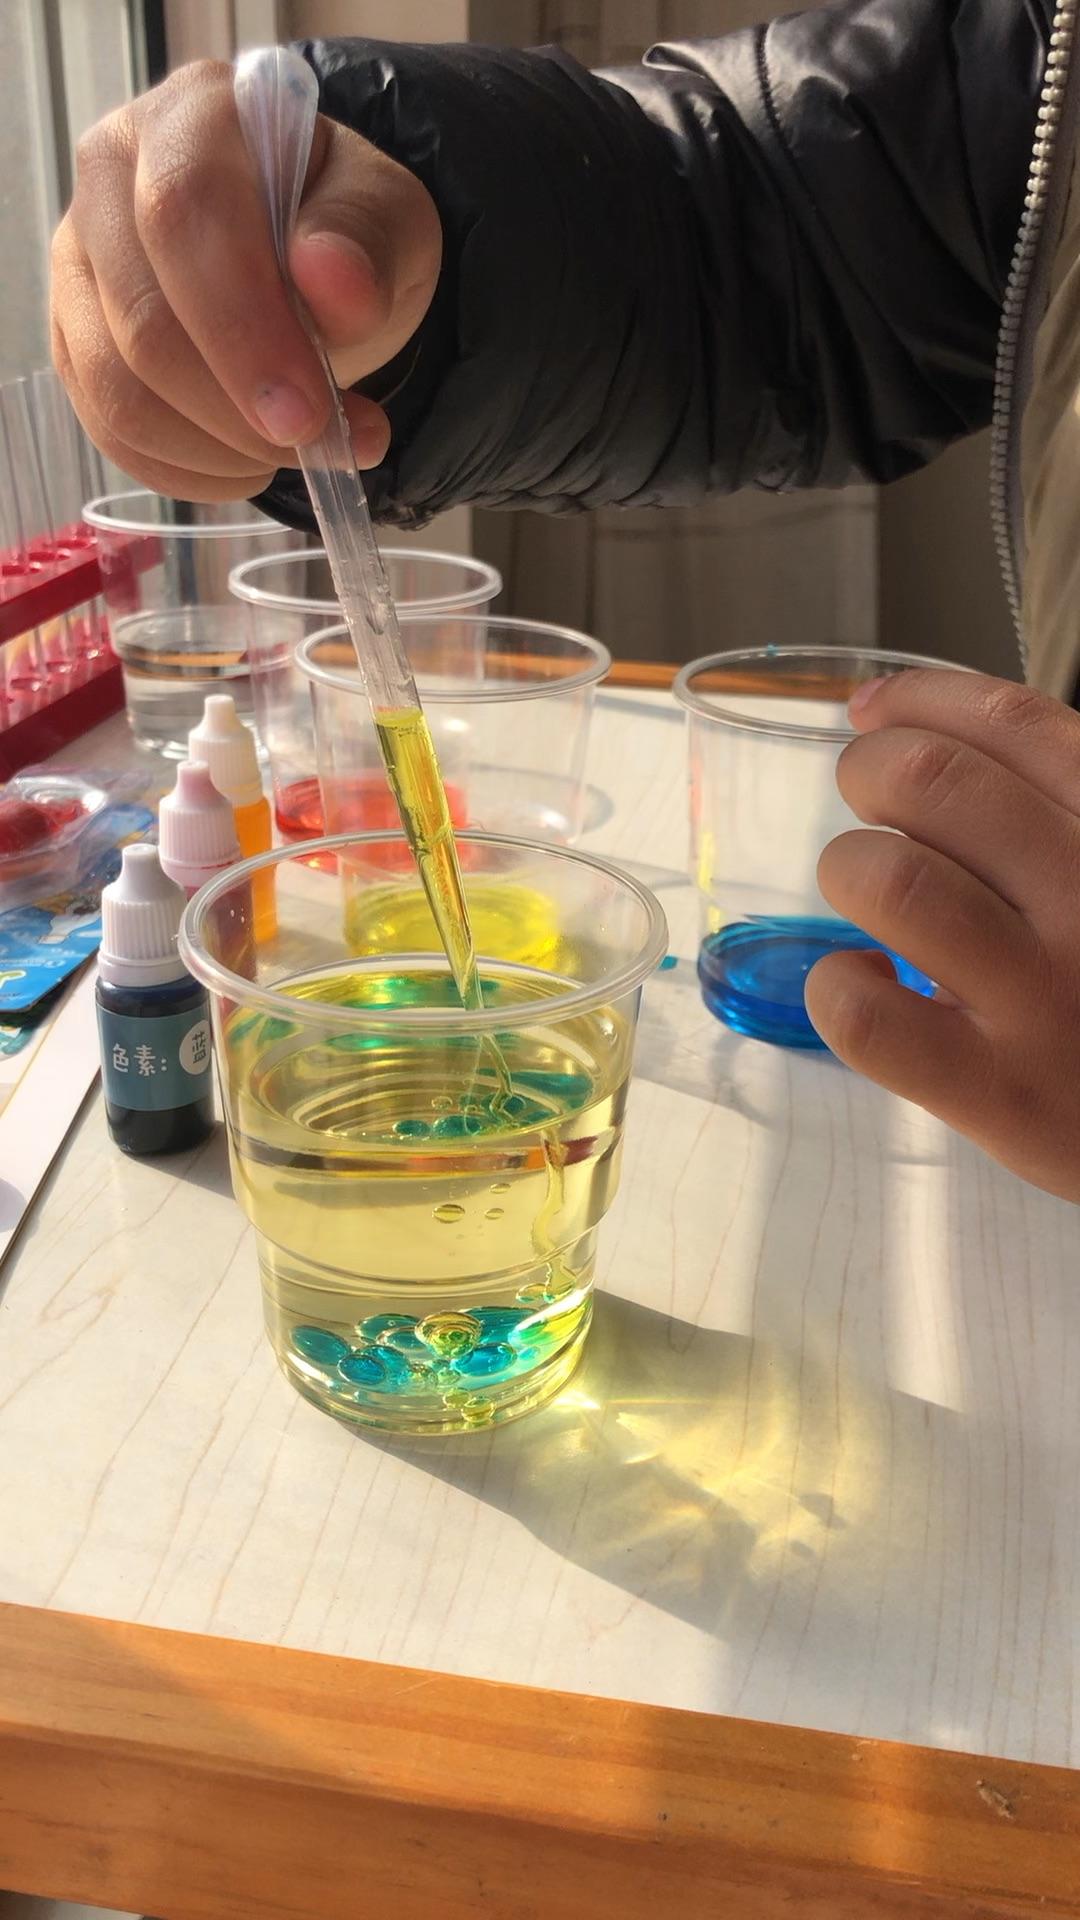 有哪些适合在家里跟孩子做的科学实验?